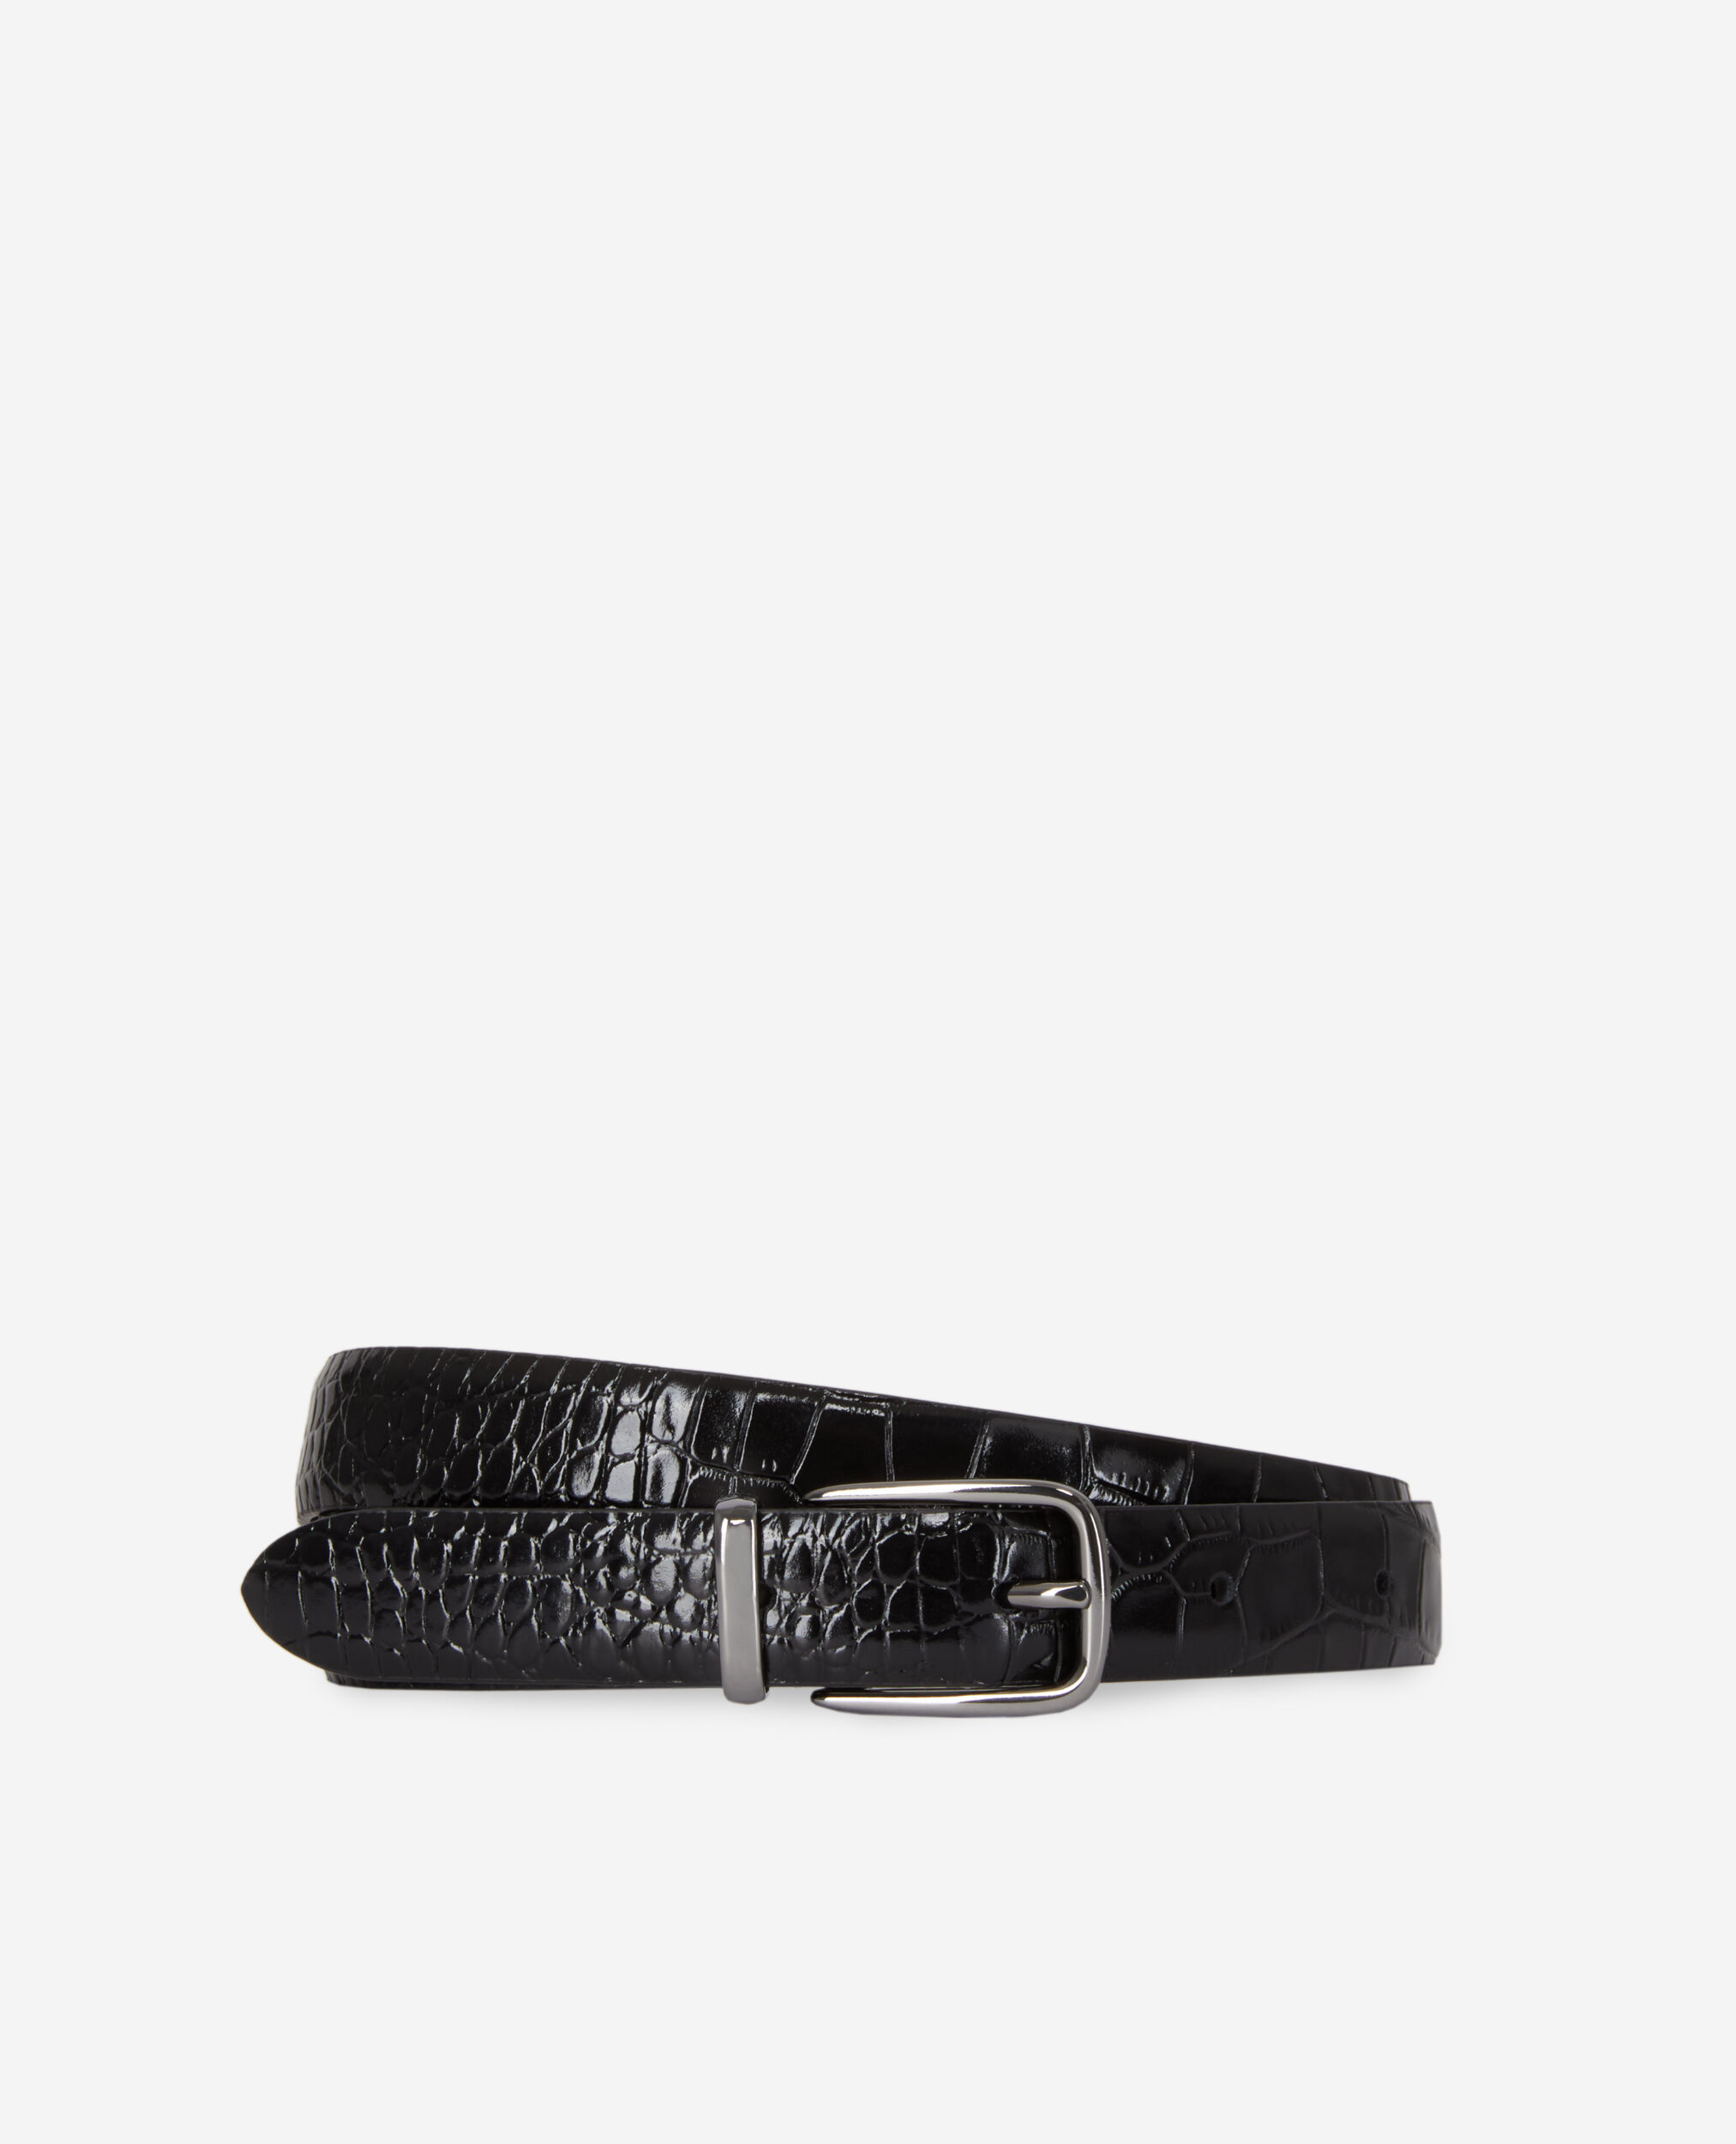 Black crocodile-effect leather belt, BLACK, hi-res image number null